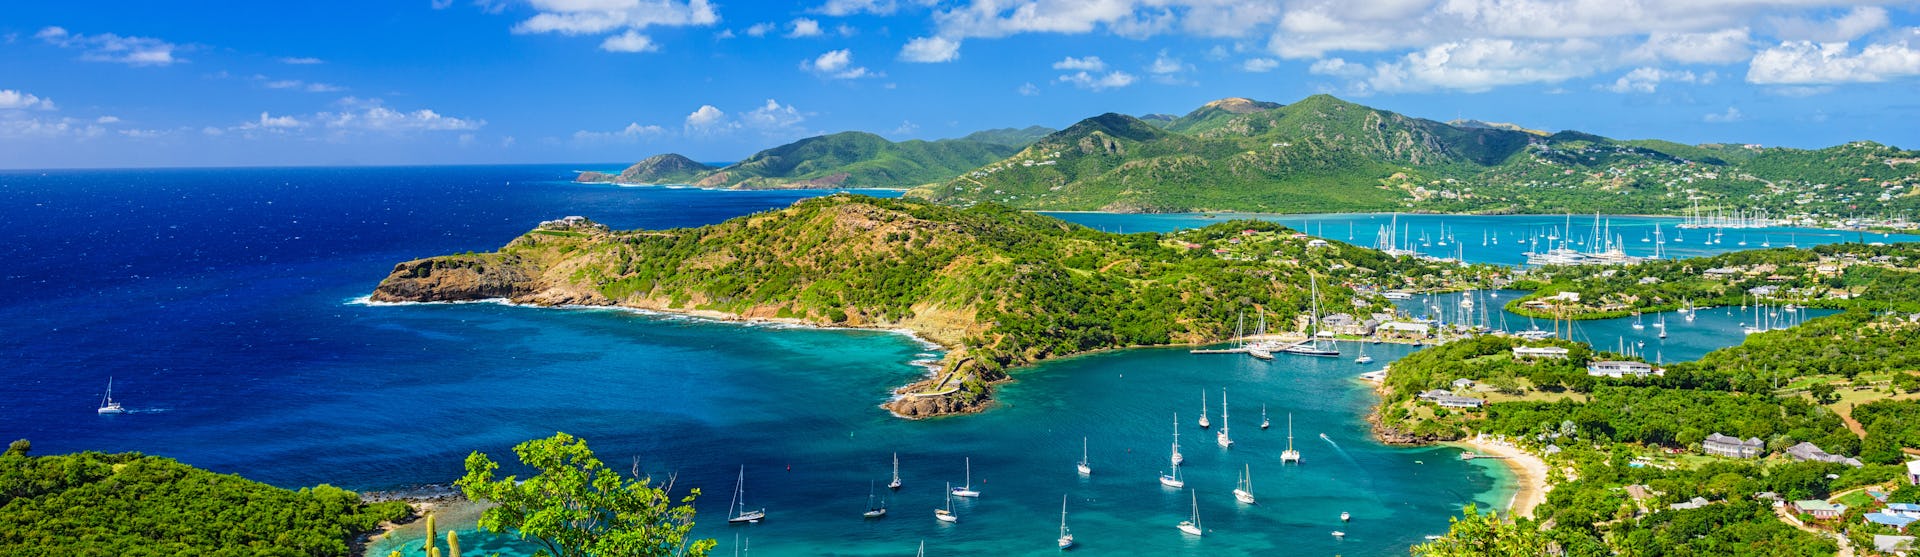 Ofertas de cruceros por Antigua & Barbuda